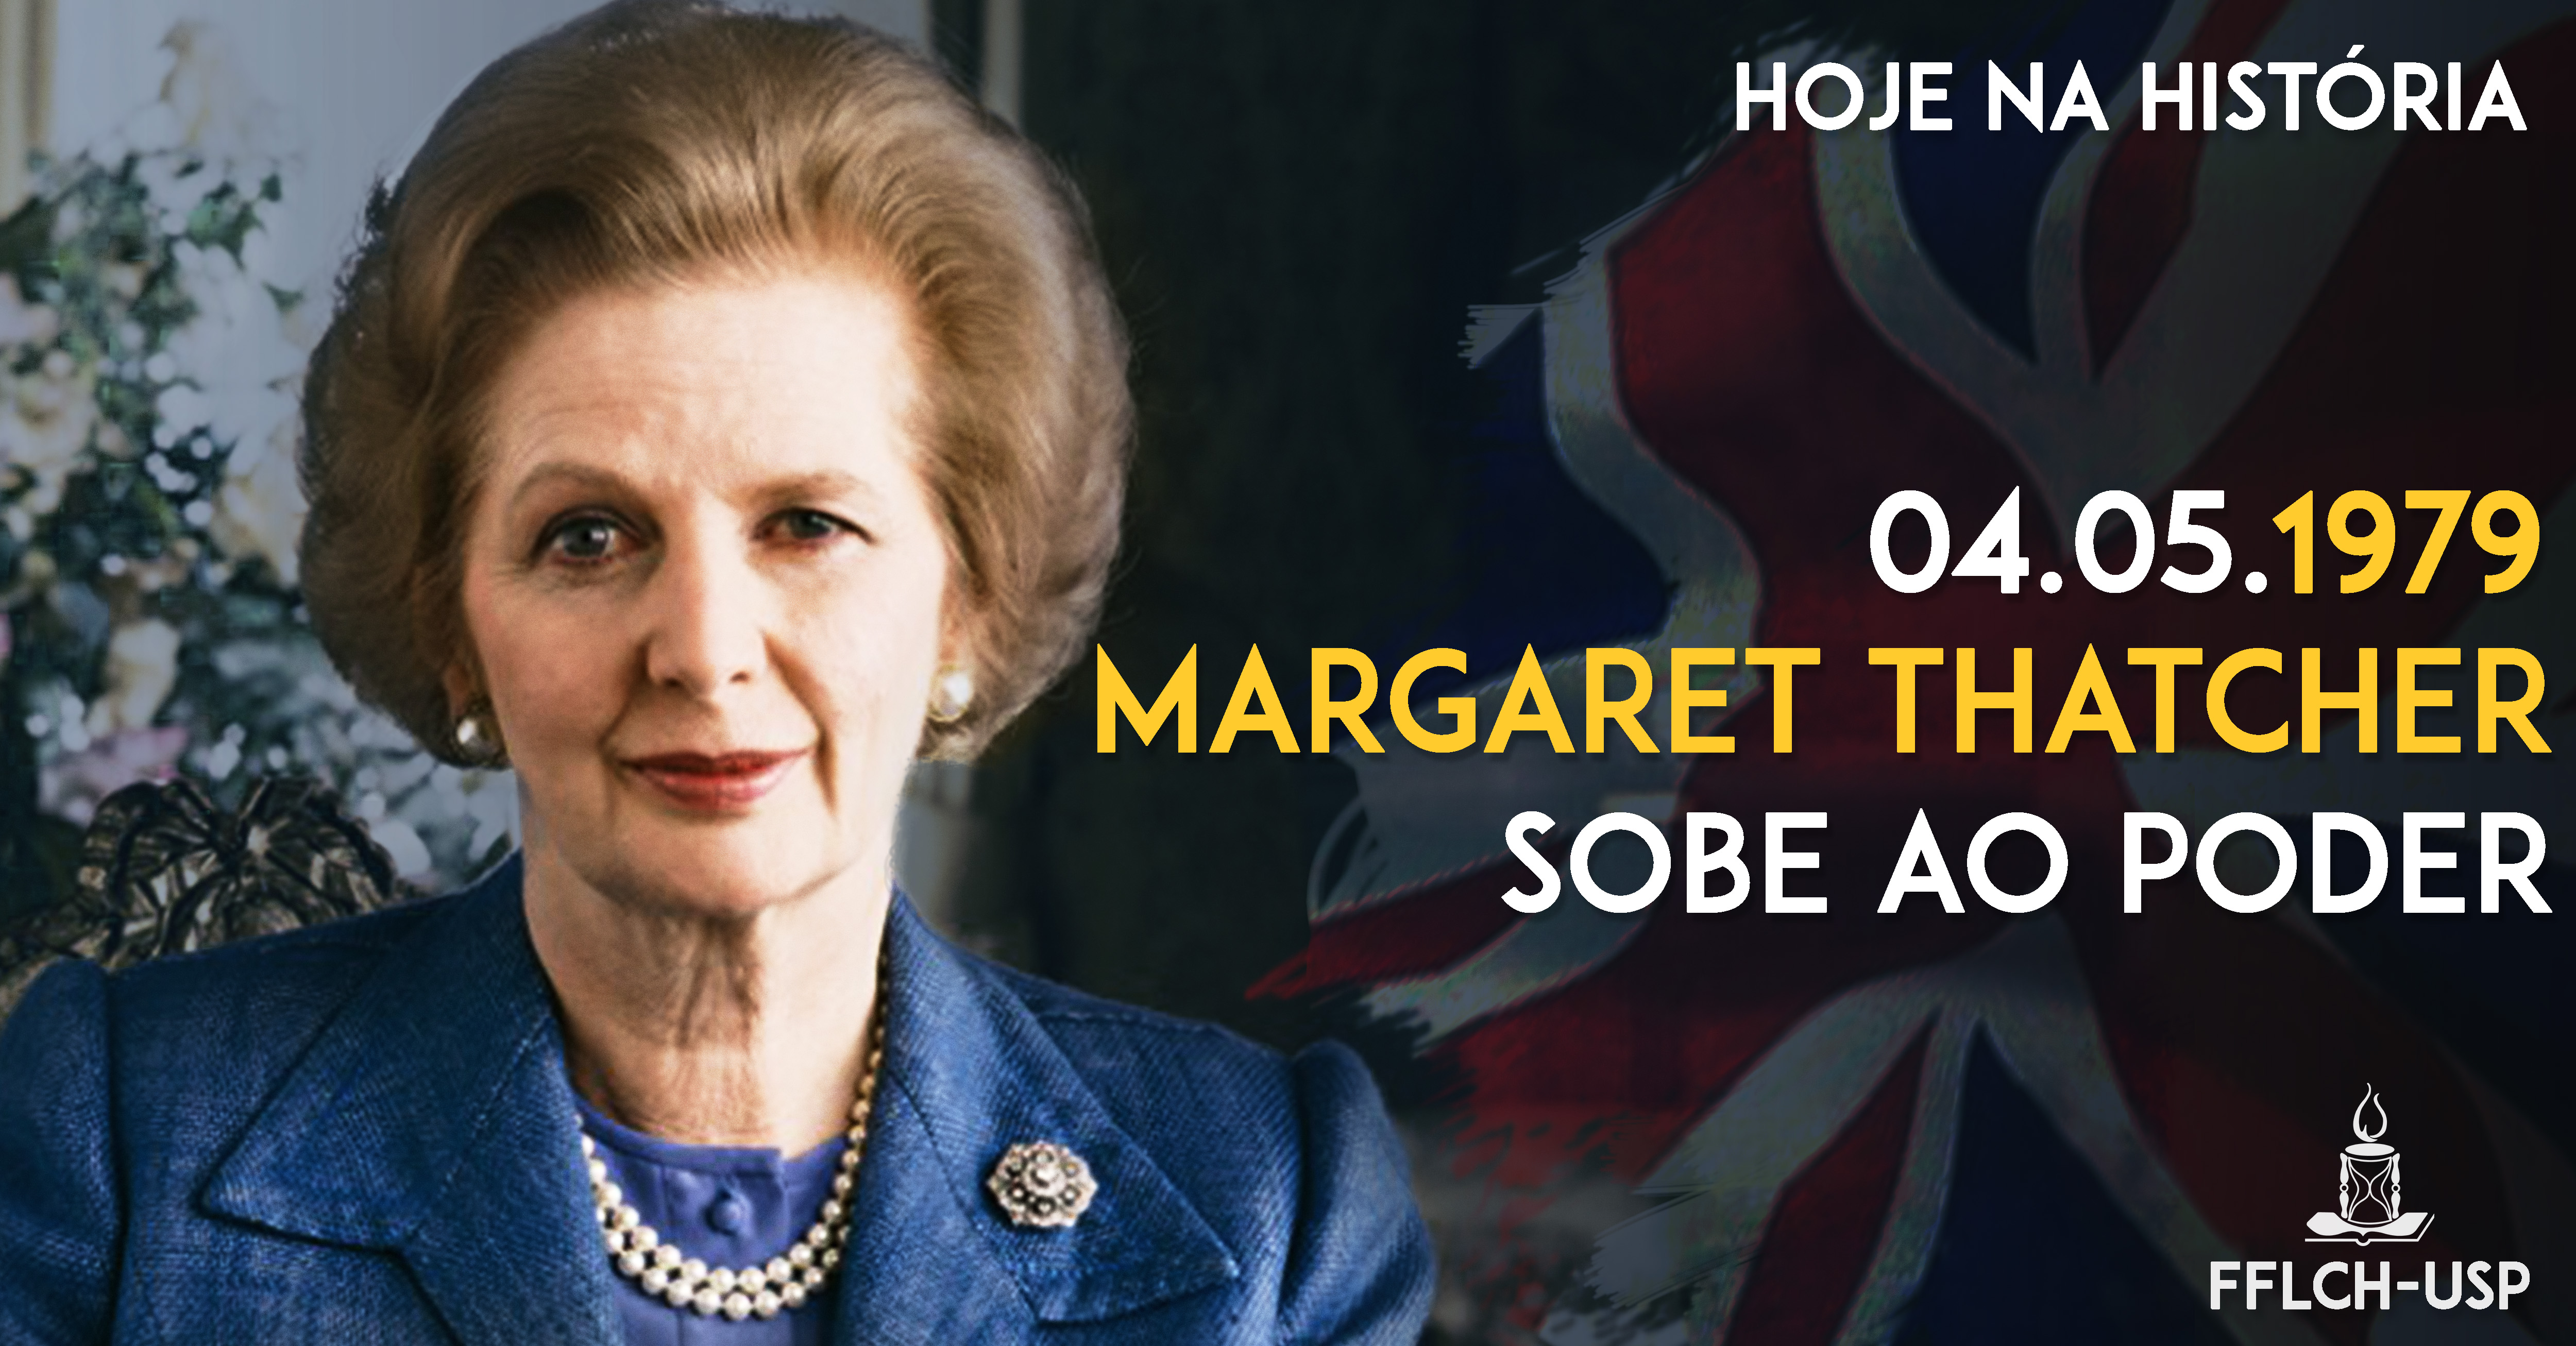 Margaret Thatcher sobe ao poder (Arte: Davi Morais)